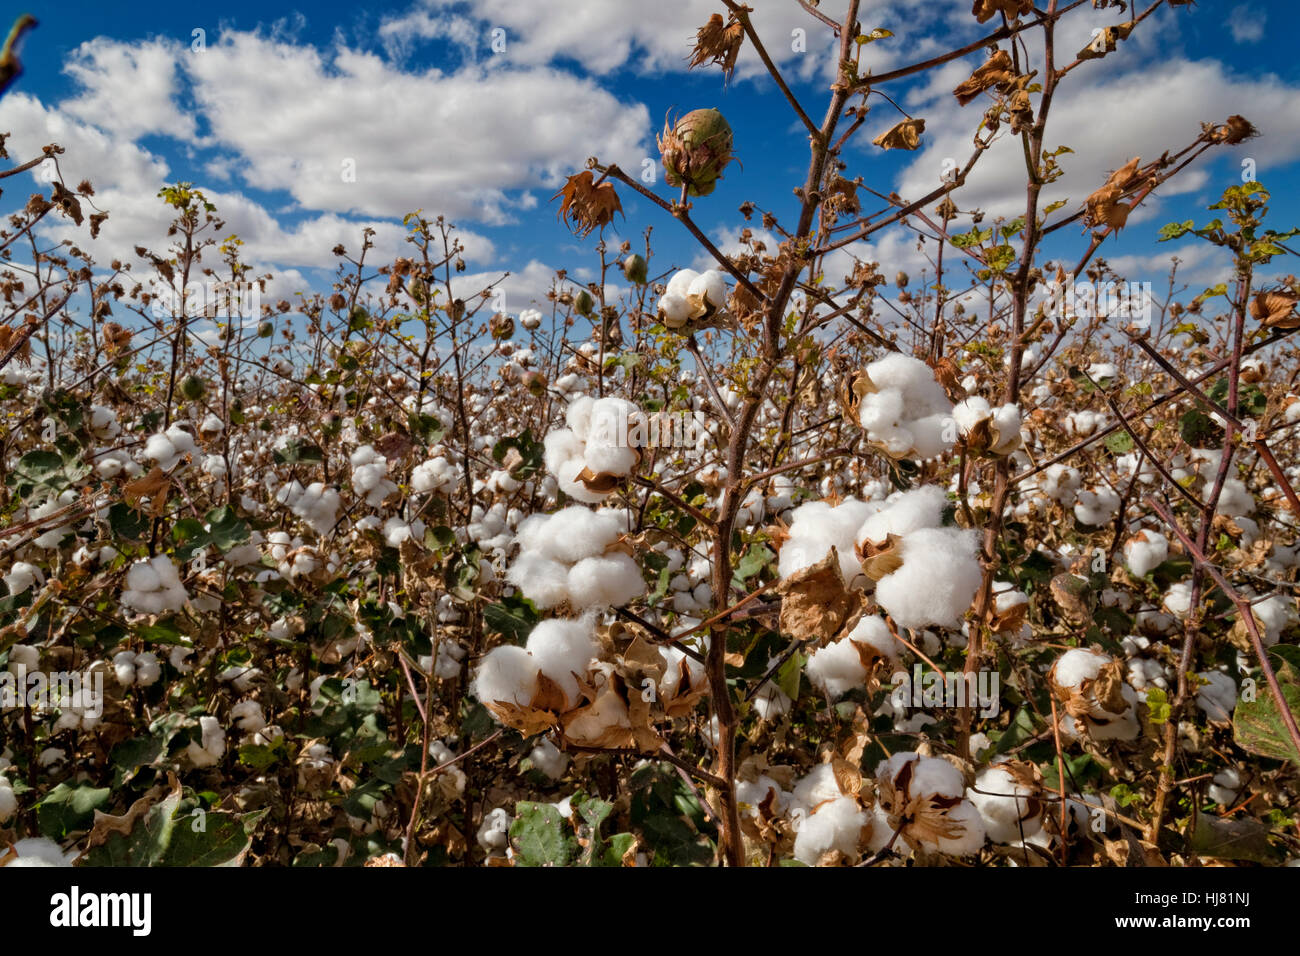 Pima-Baumwolle bereit für die Ernte - Landwirtschaft - Marana, Arizona Stockfoto